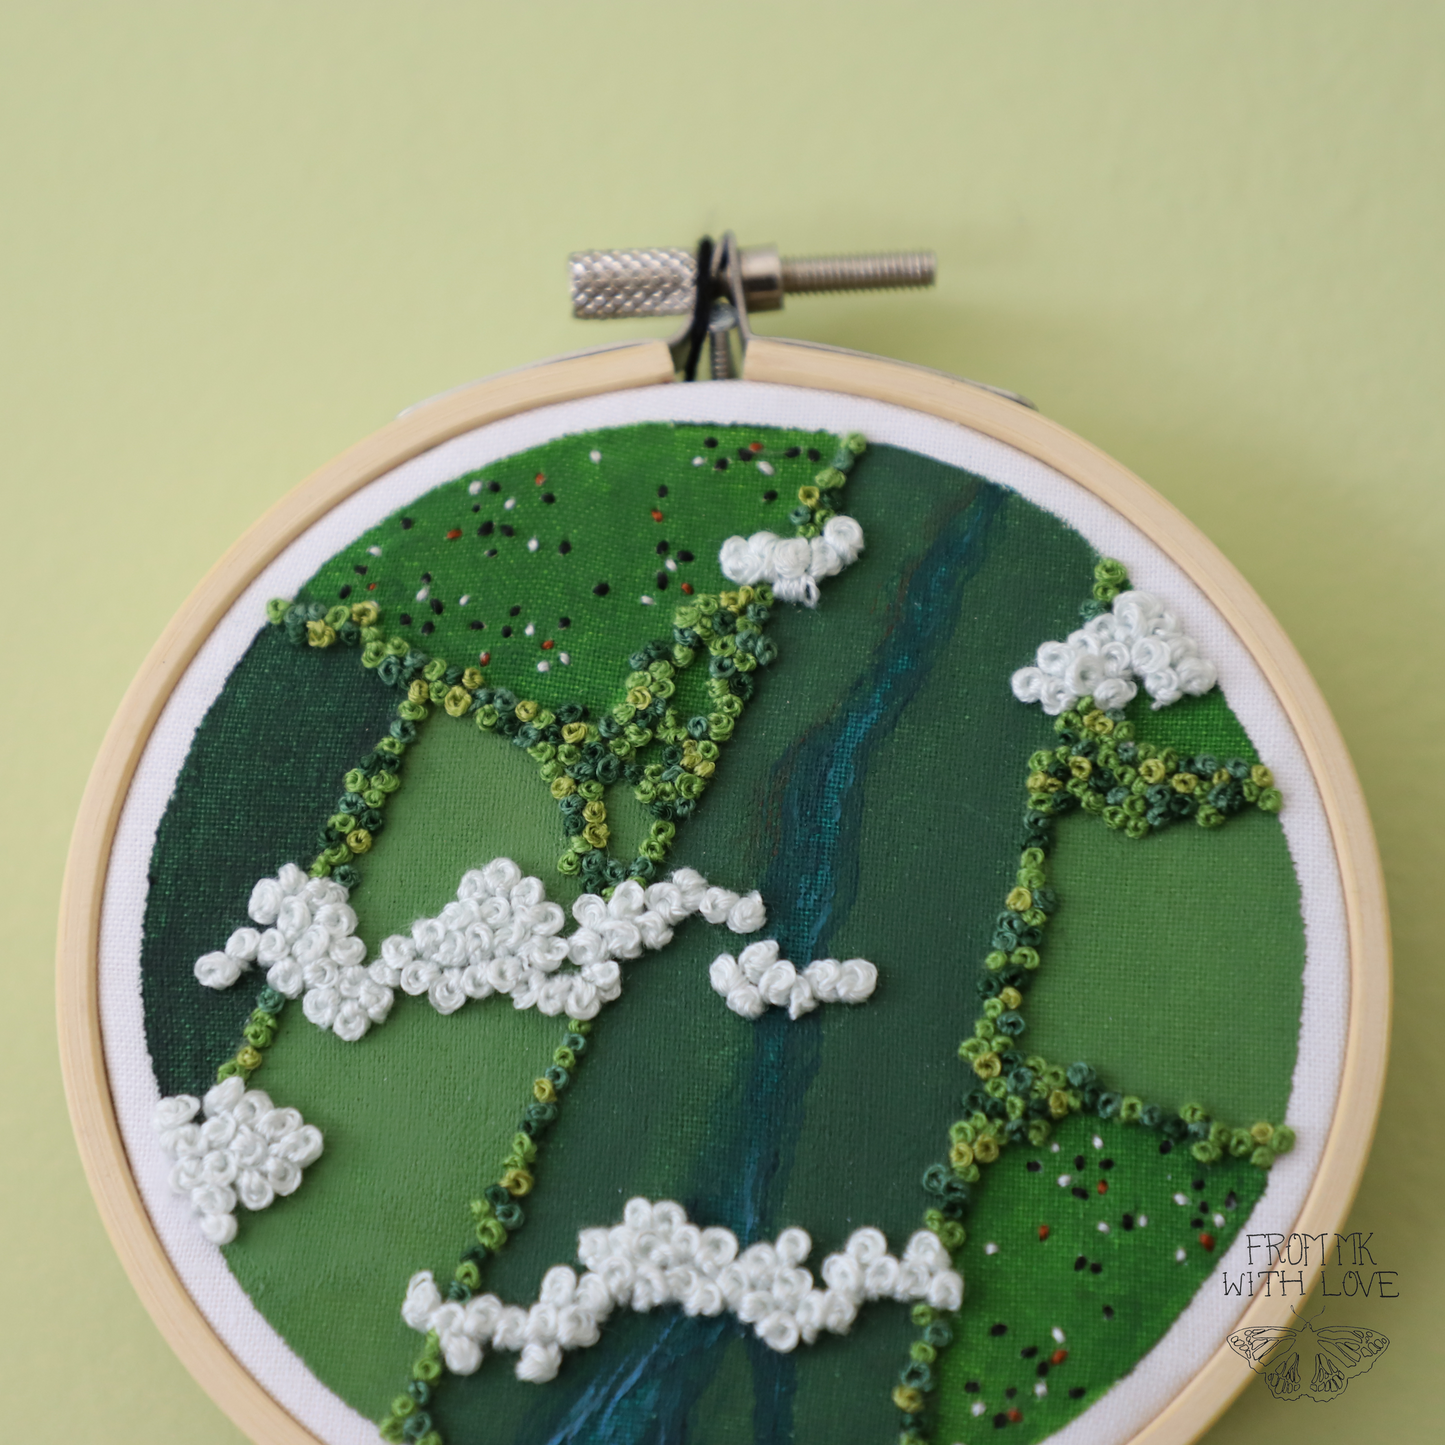 Aerial Farmland embroidery - 4"